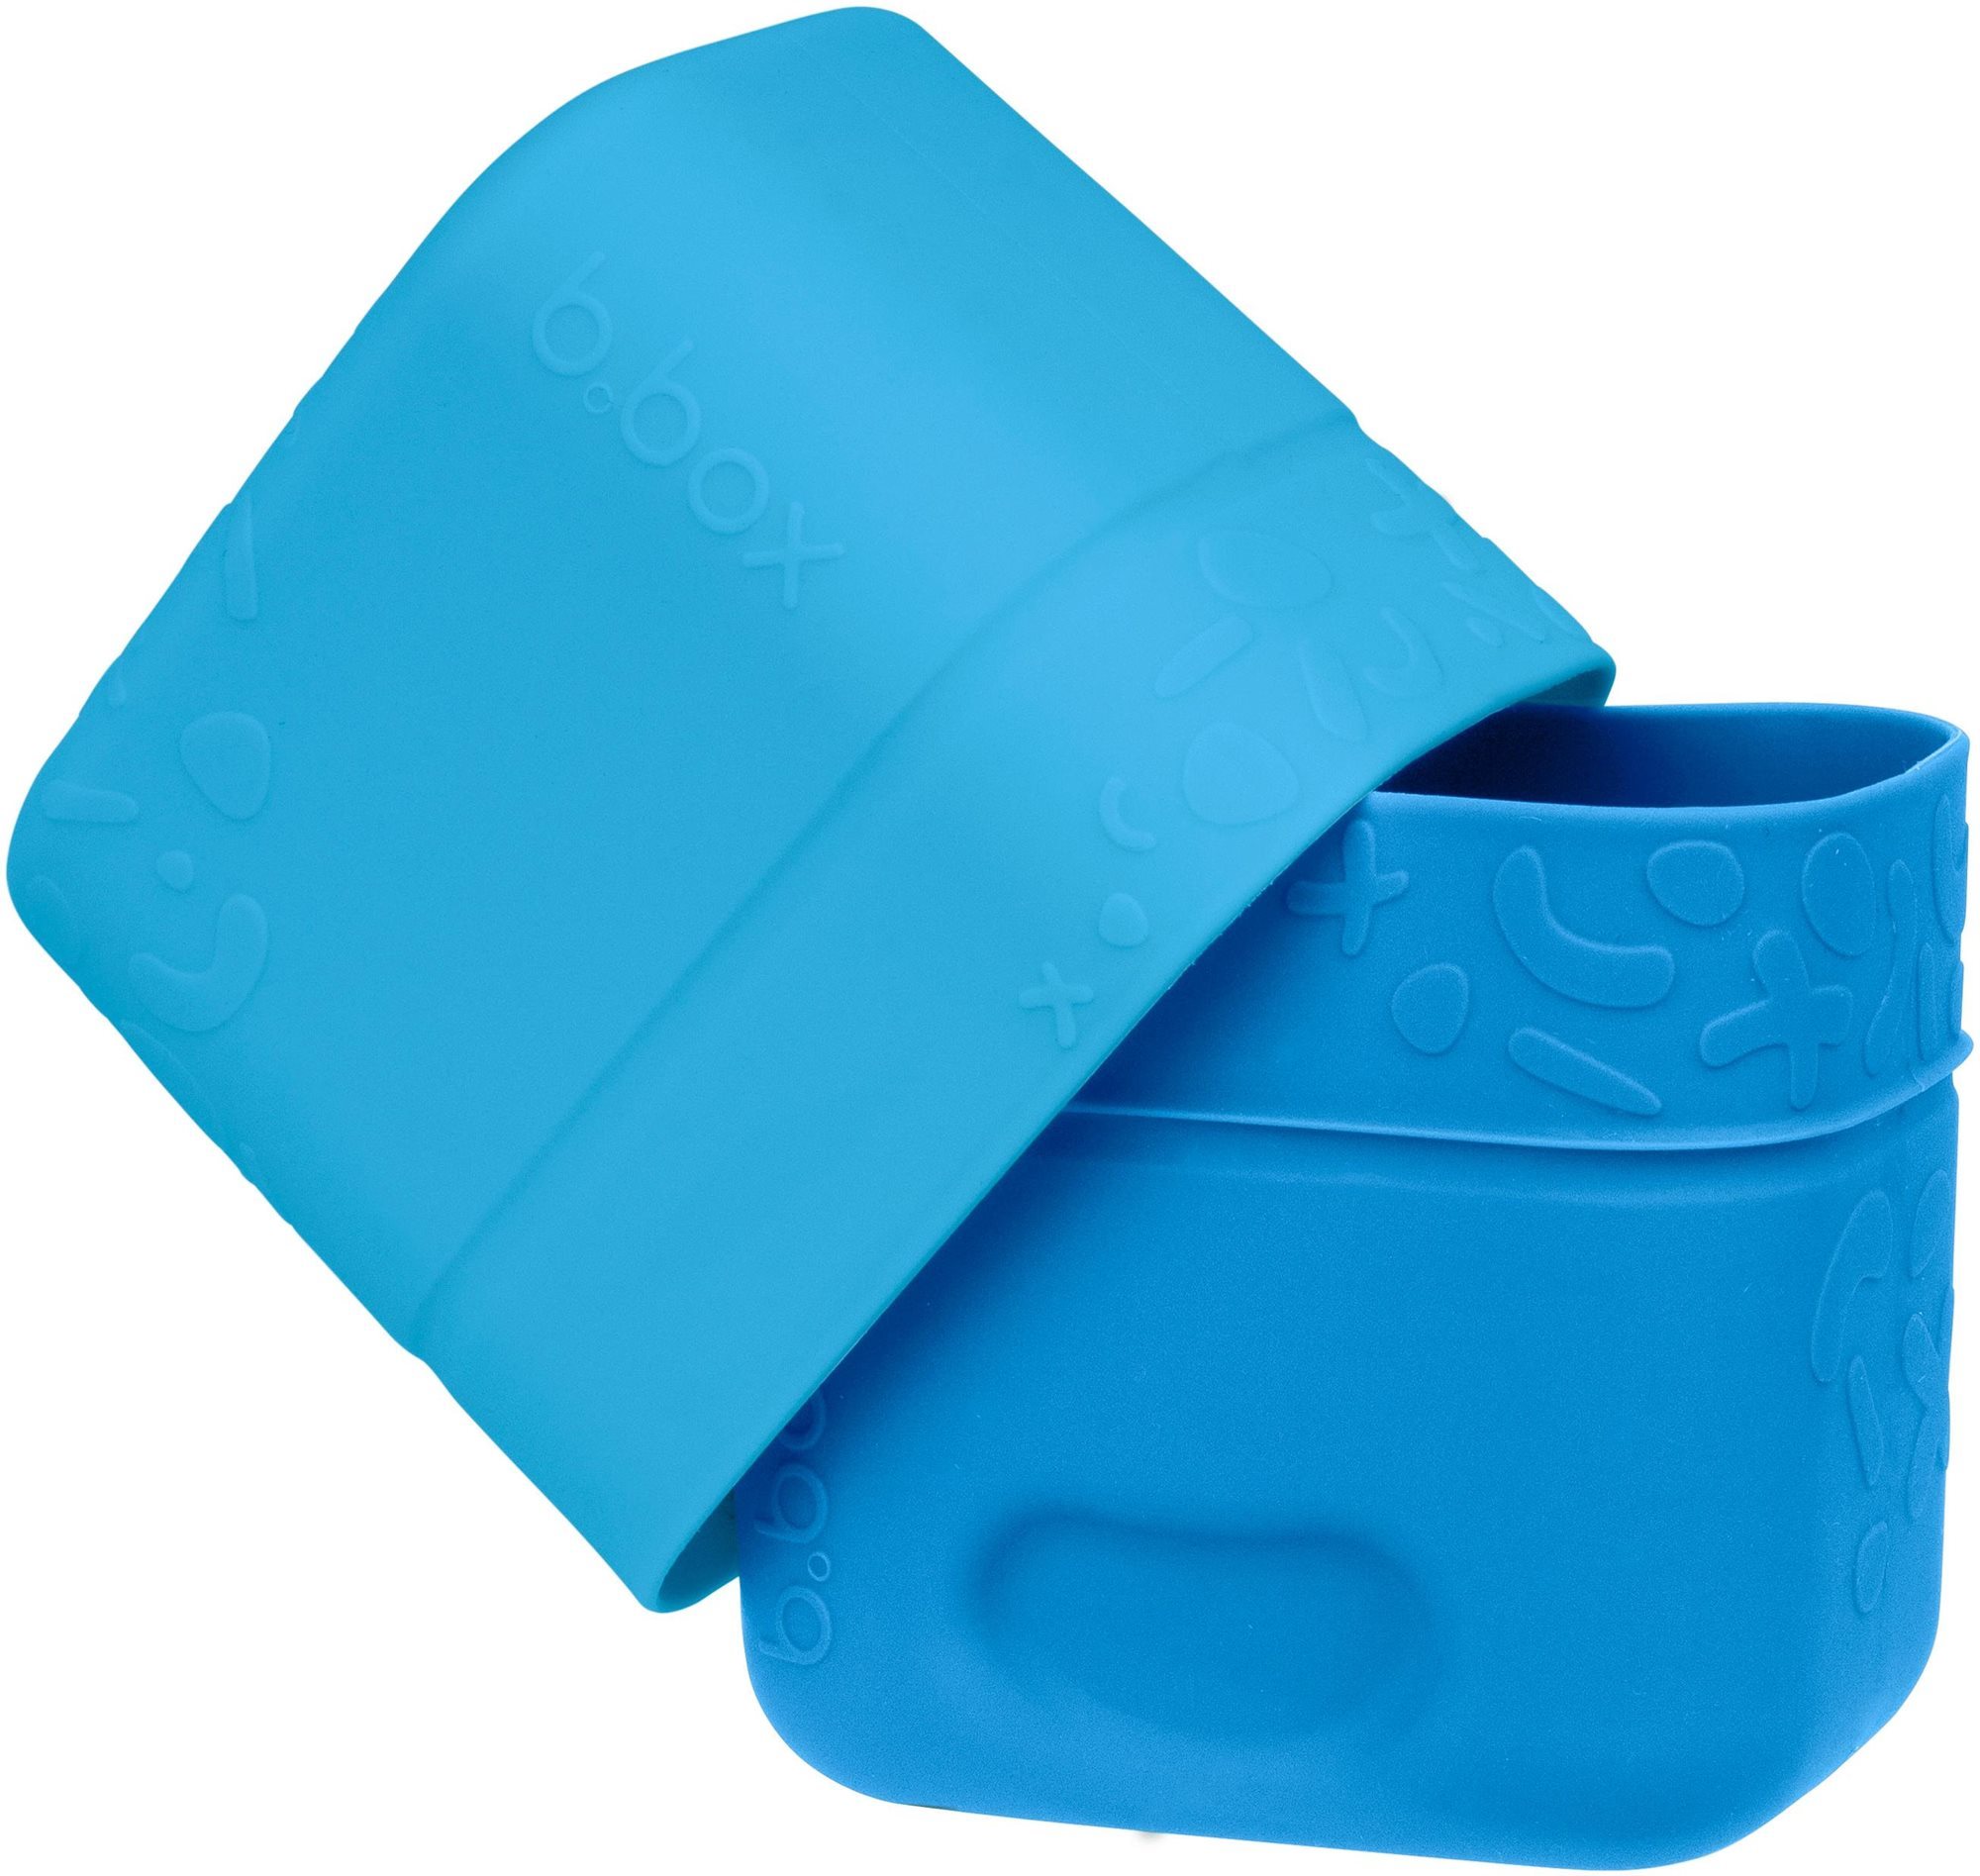 B.Box Mini uzsonnás doboz - kék